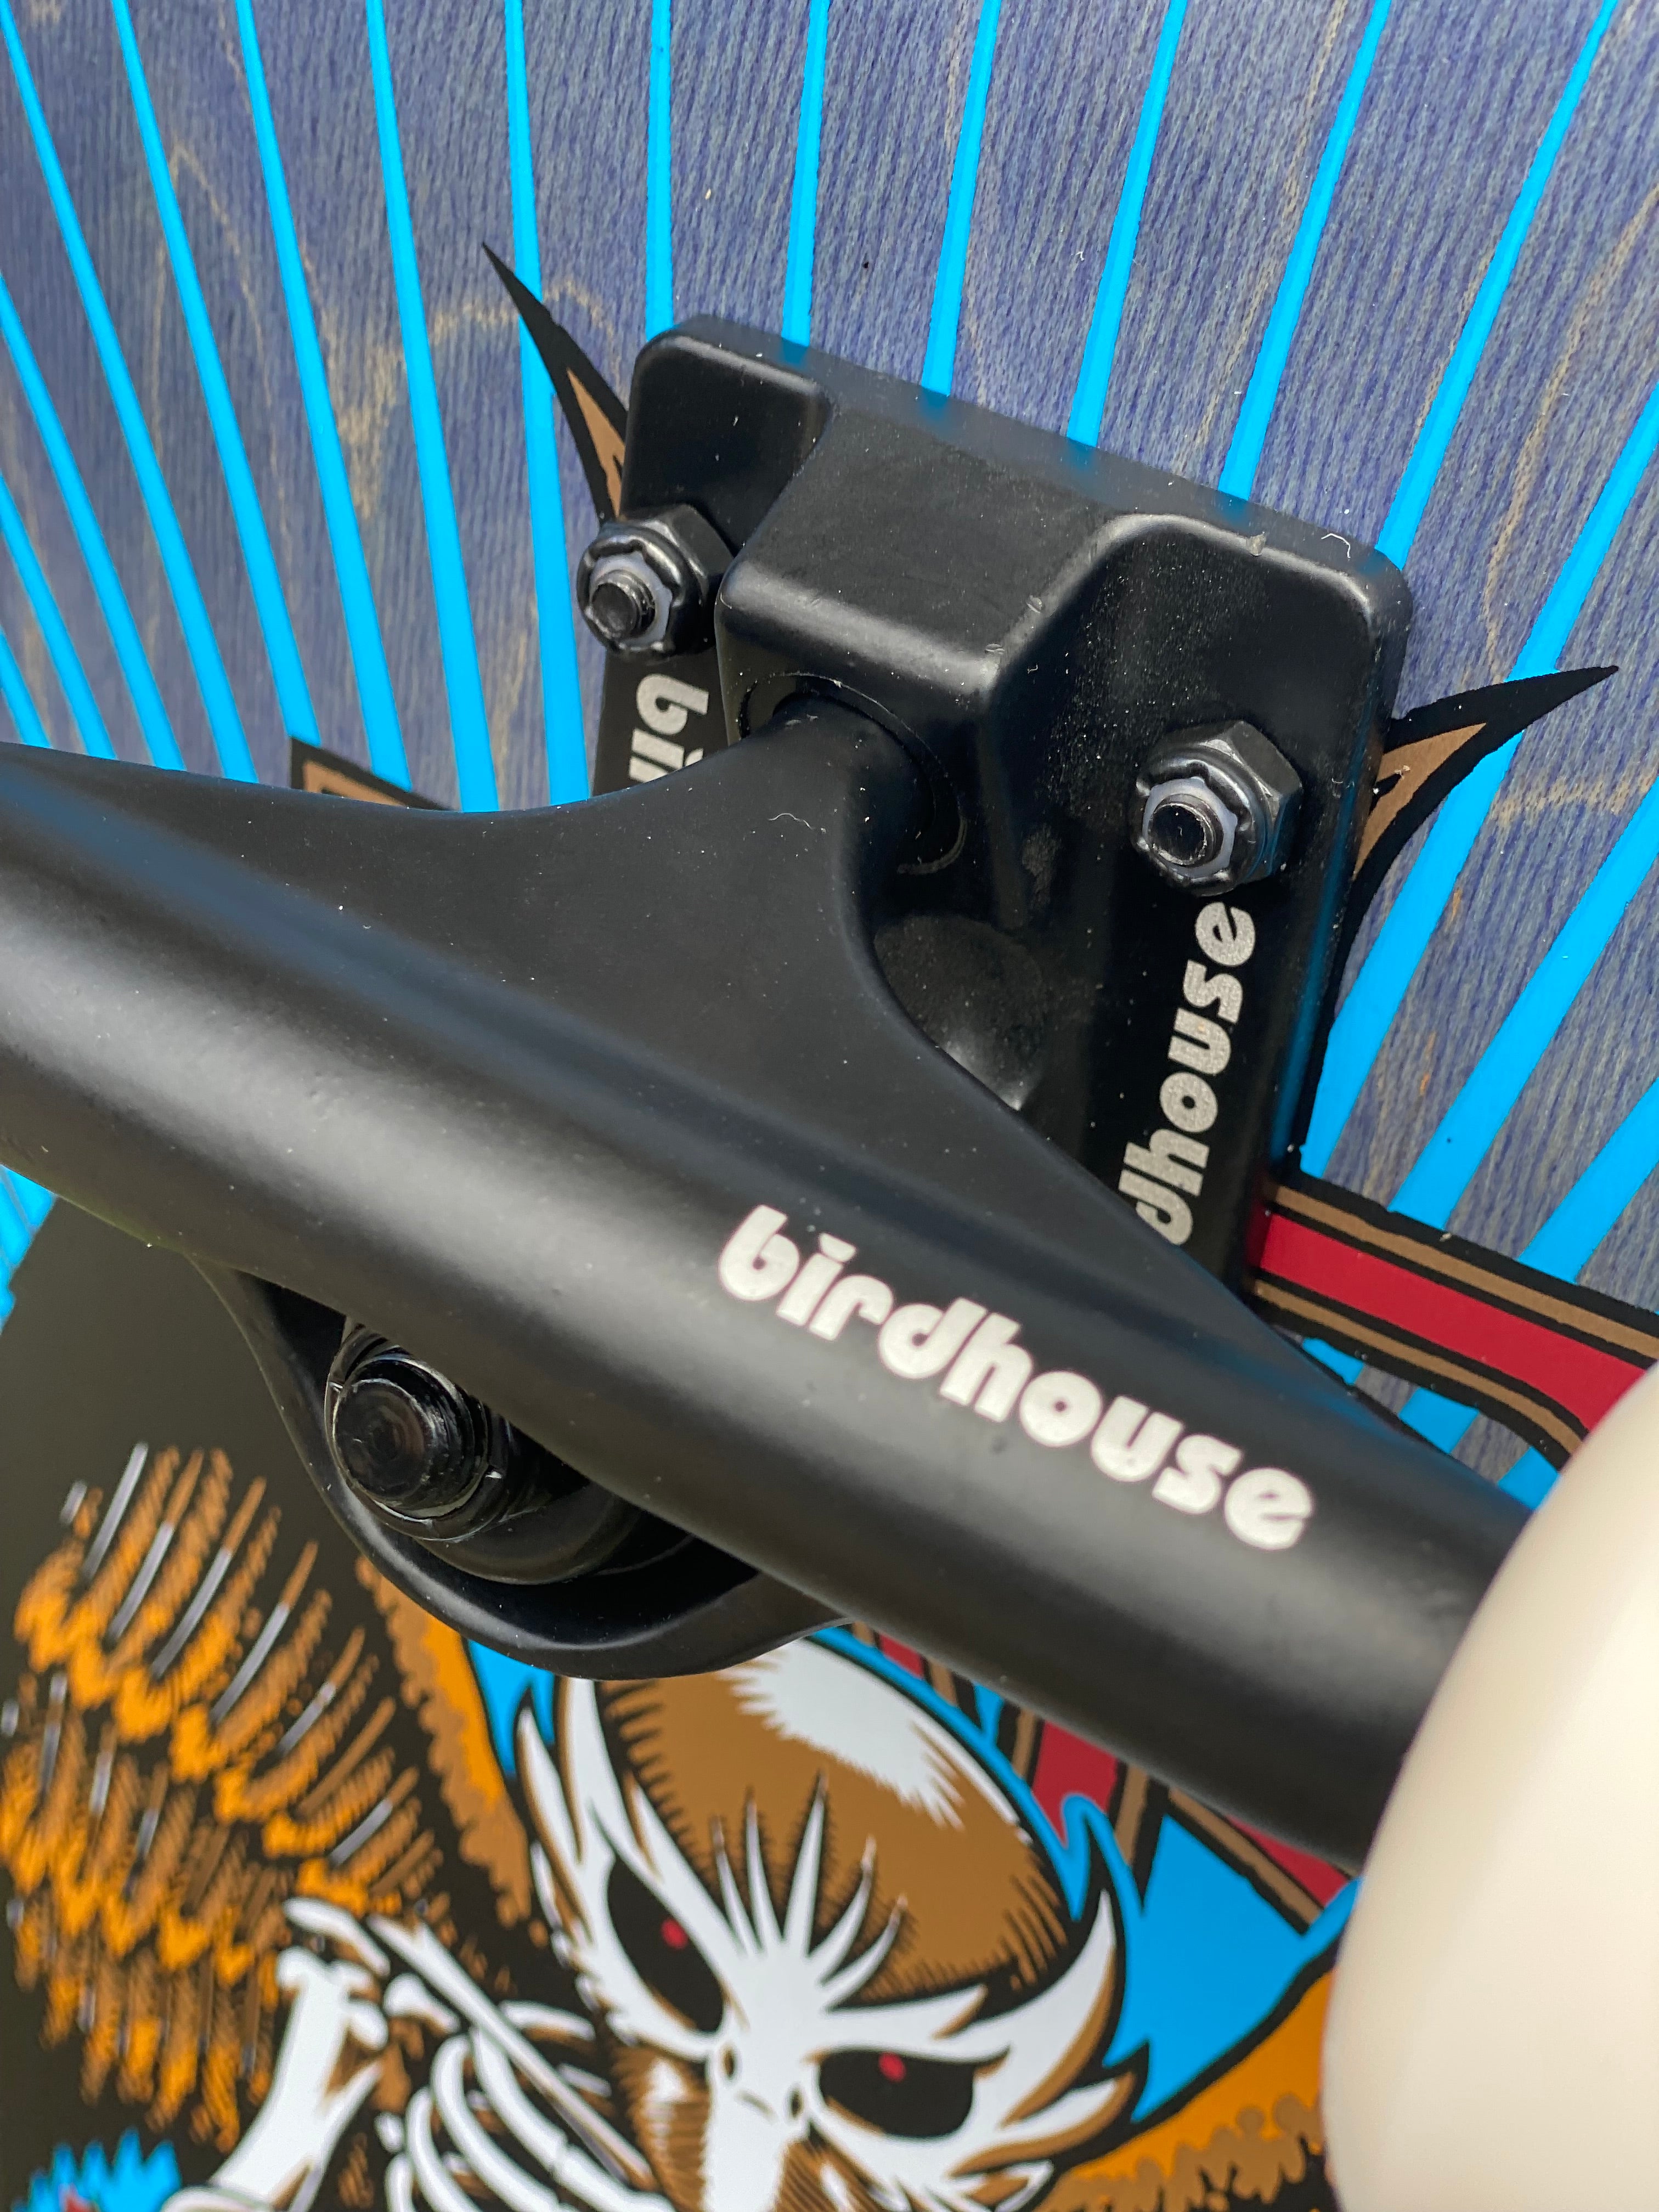 Birdhouse Hawk Birdman 8” Complete Skateboard